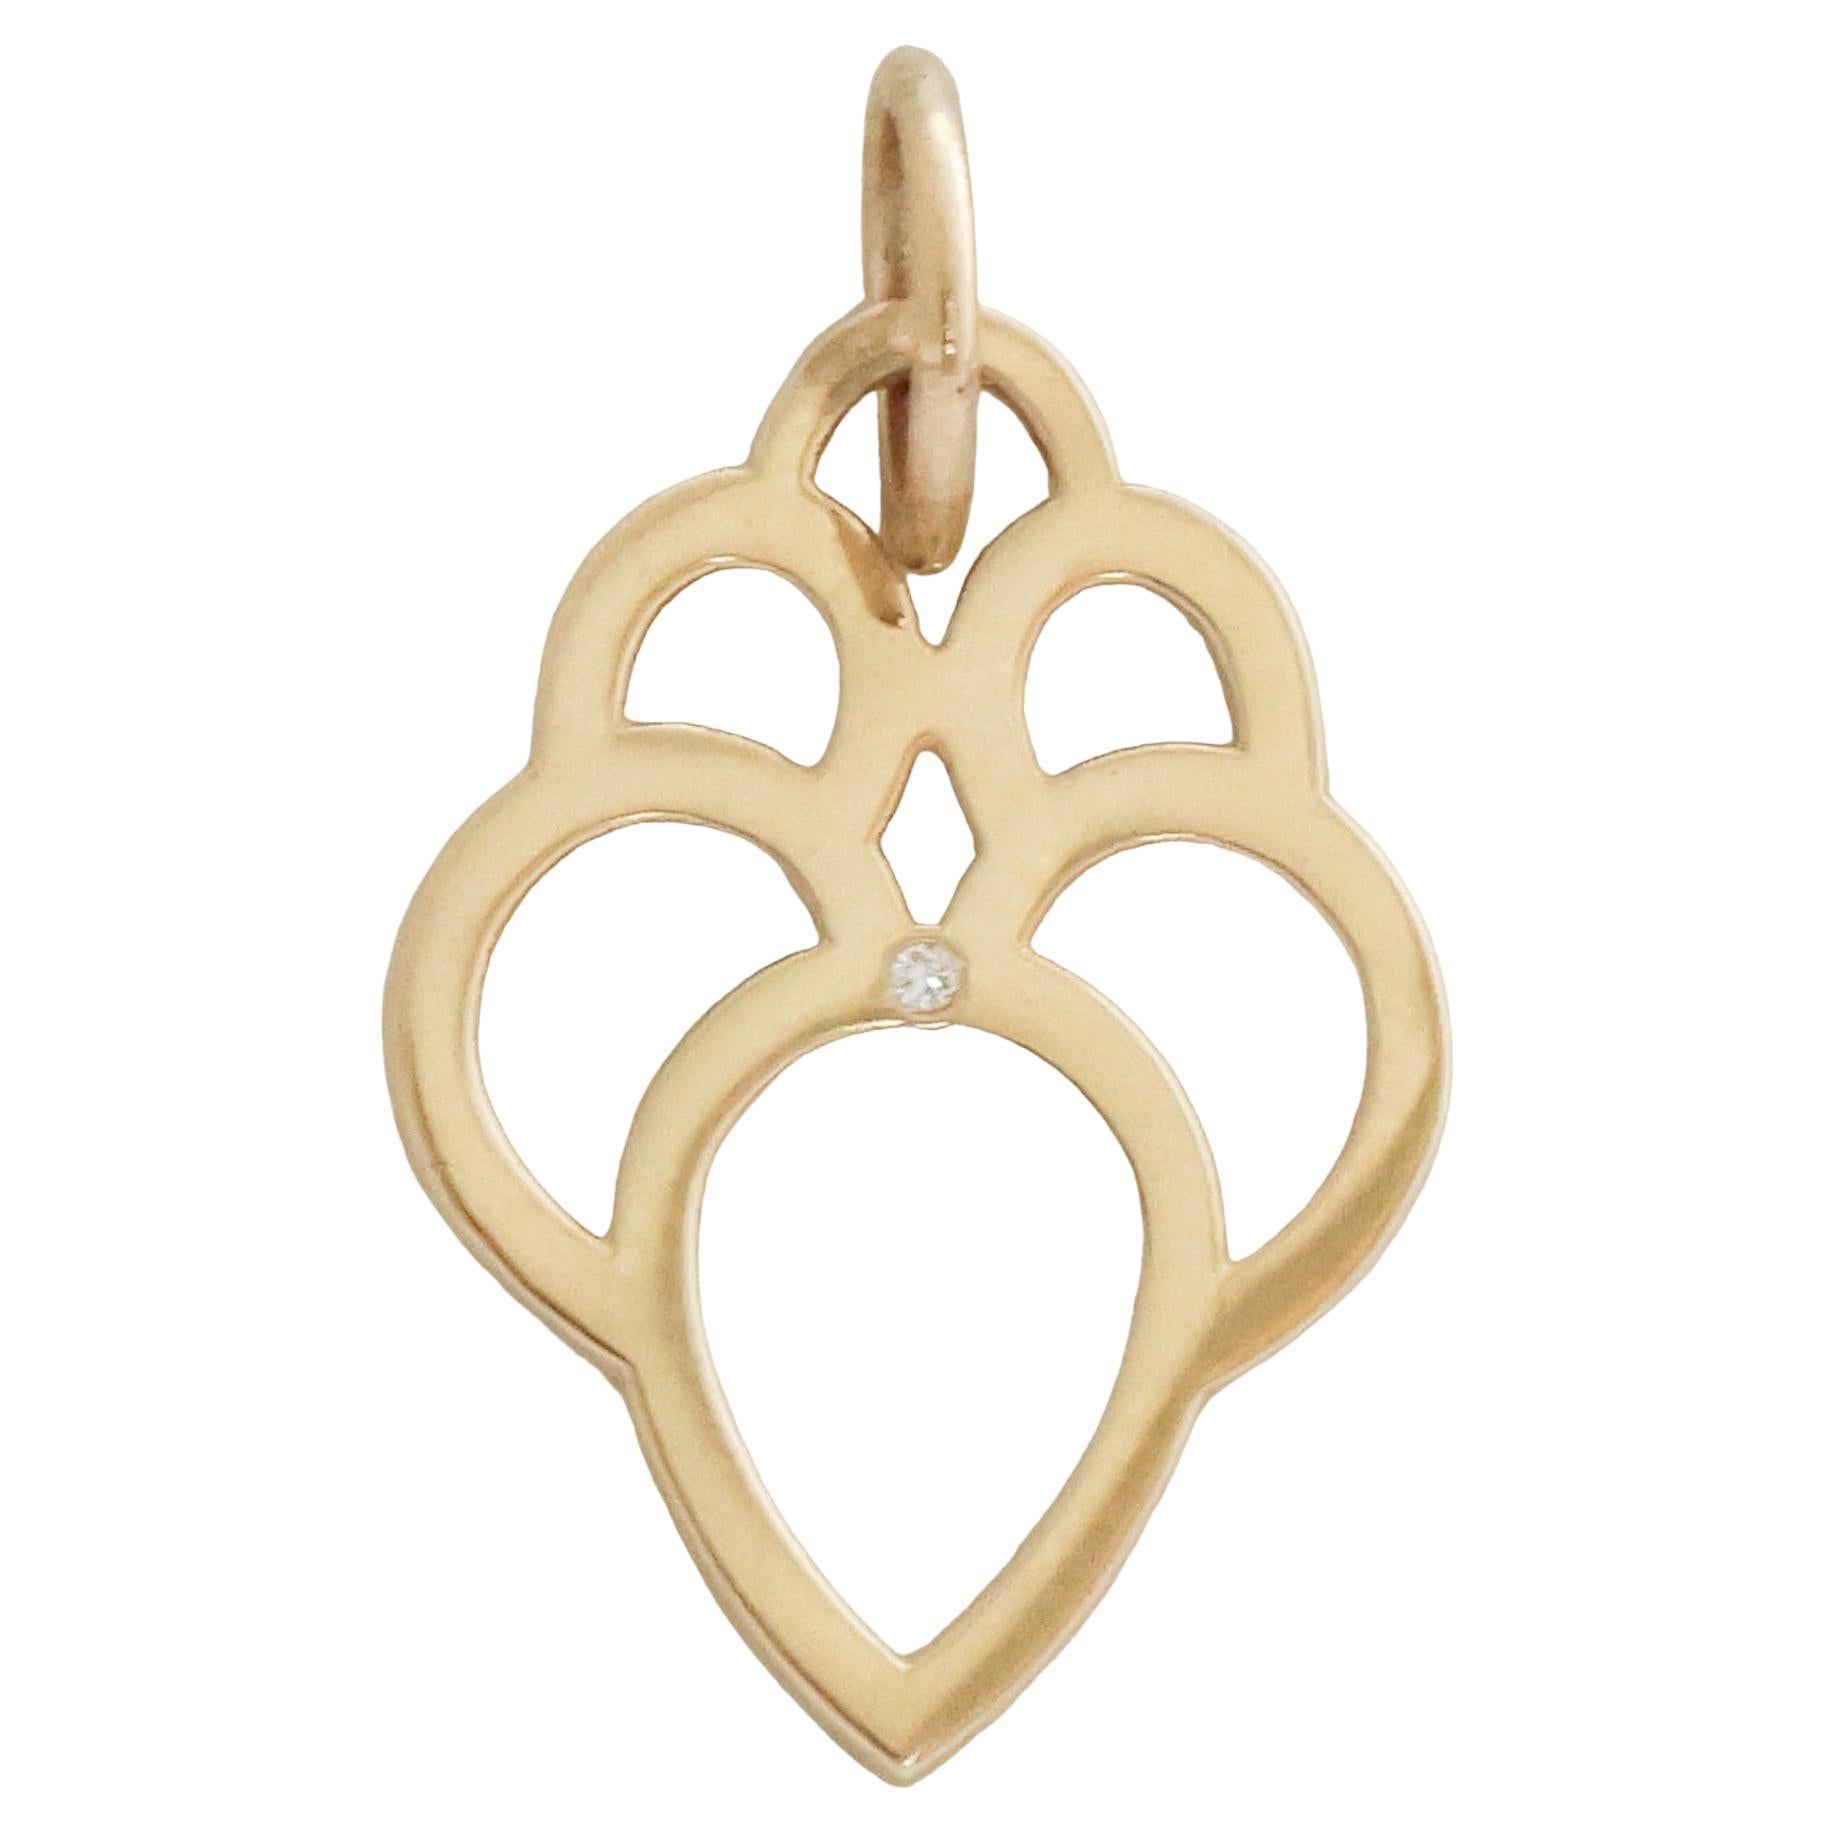 Brilliant Cut Gold Lotus Diamond Pendant Necklace Charm For Sale